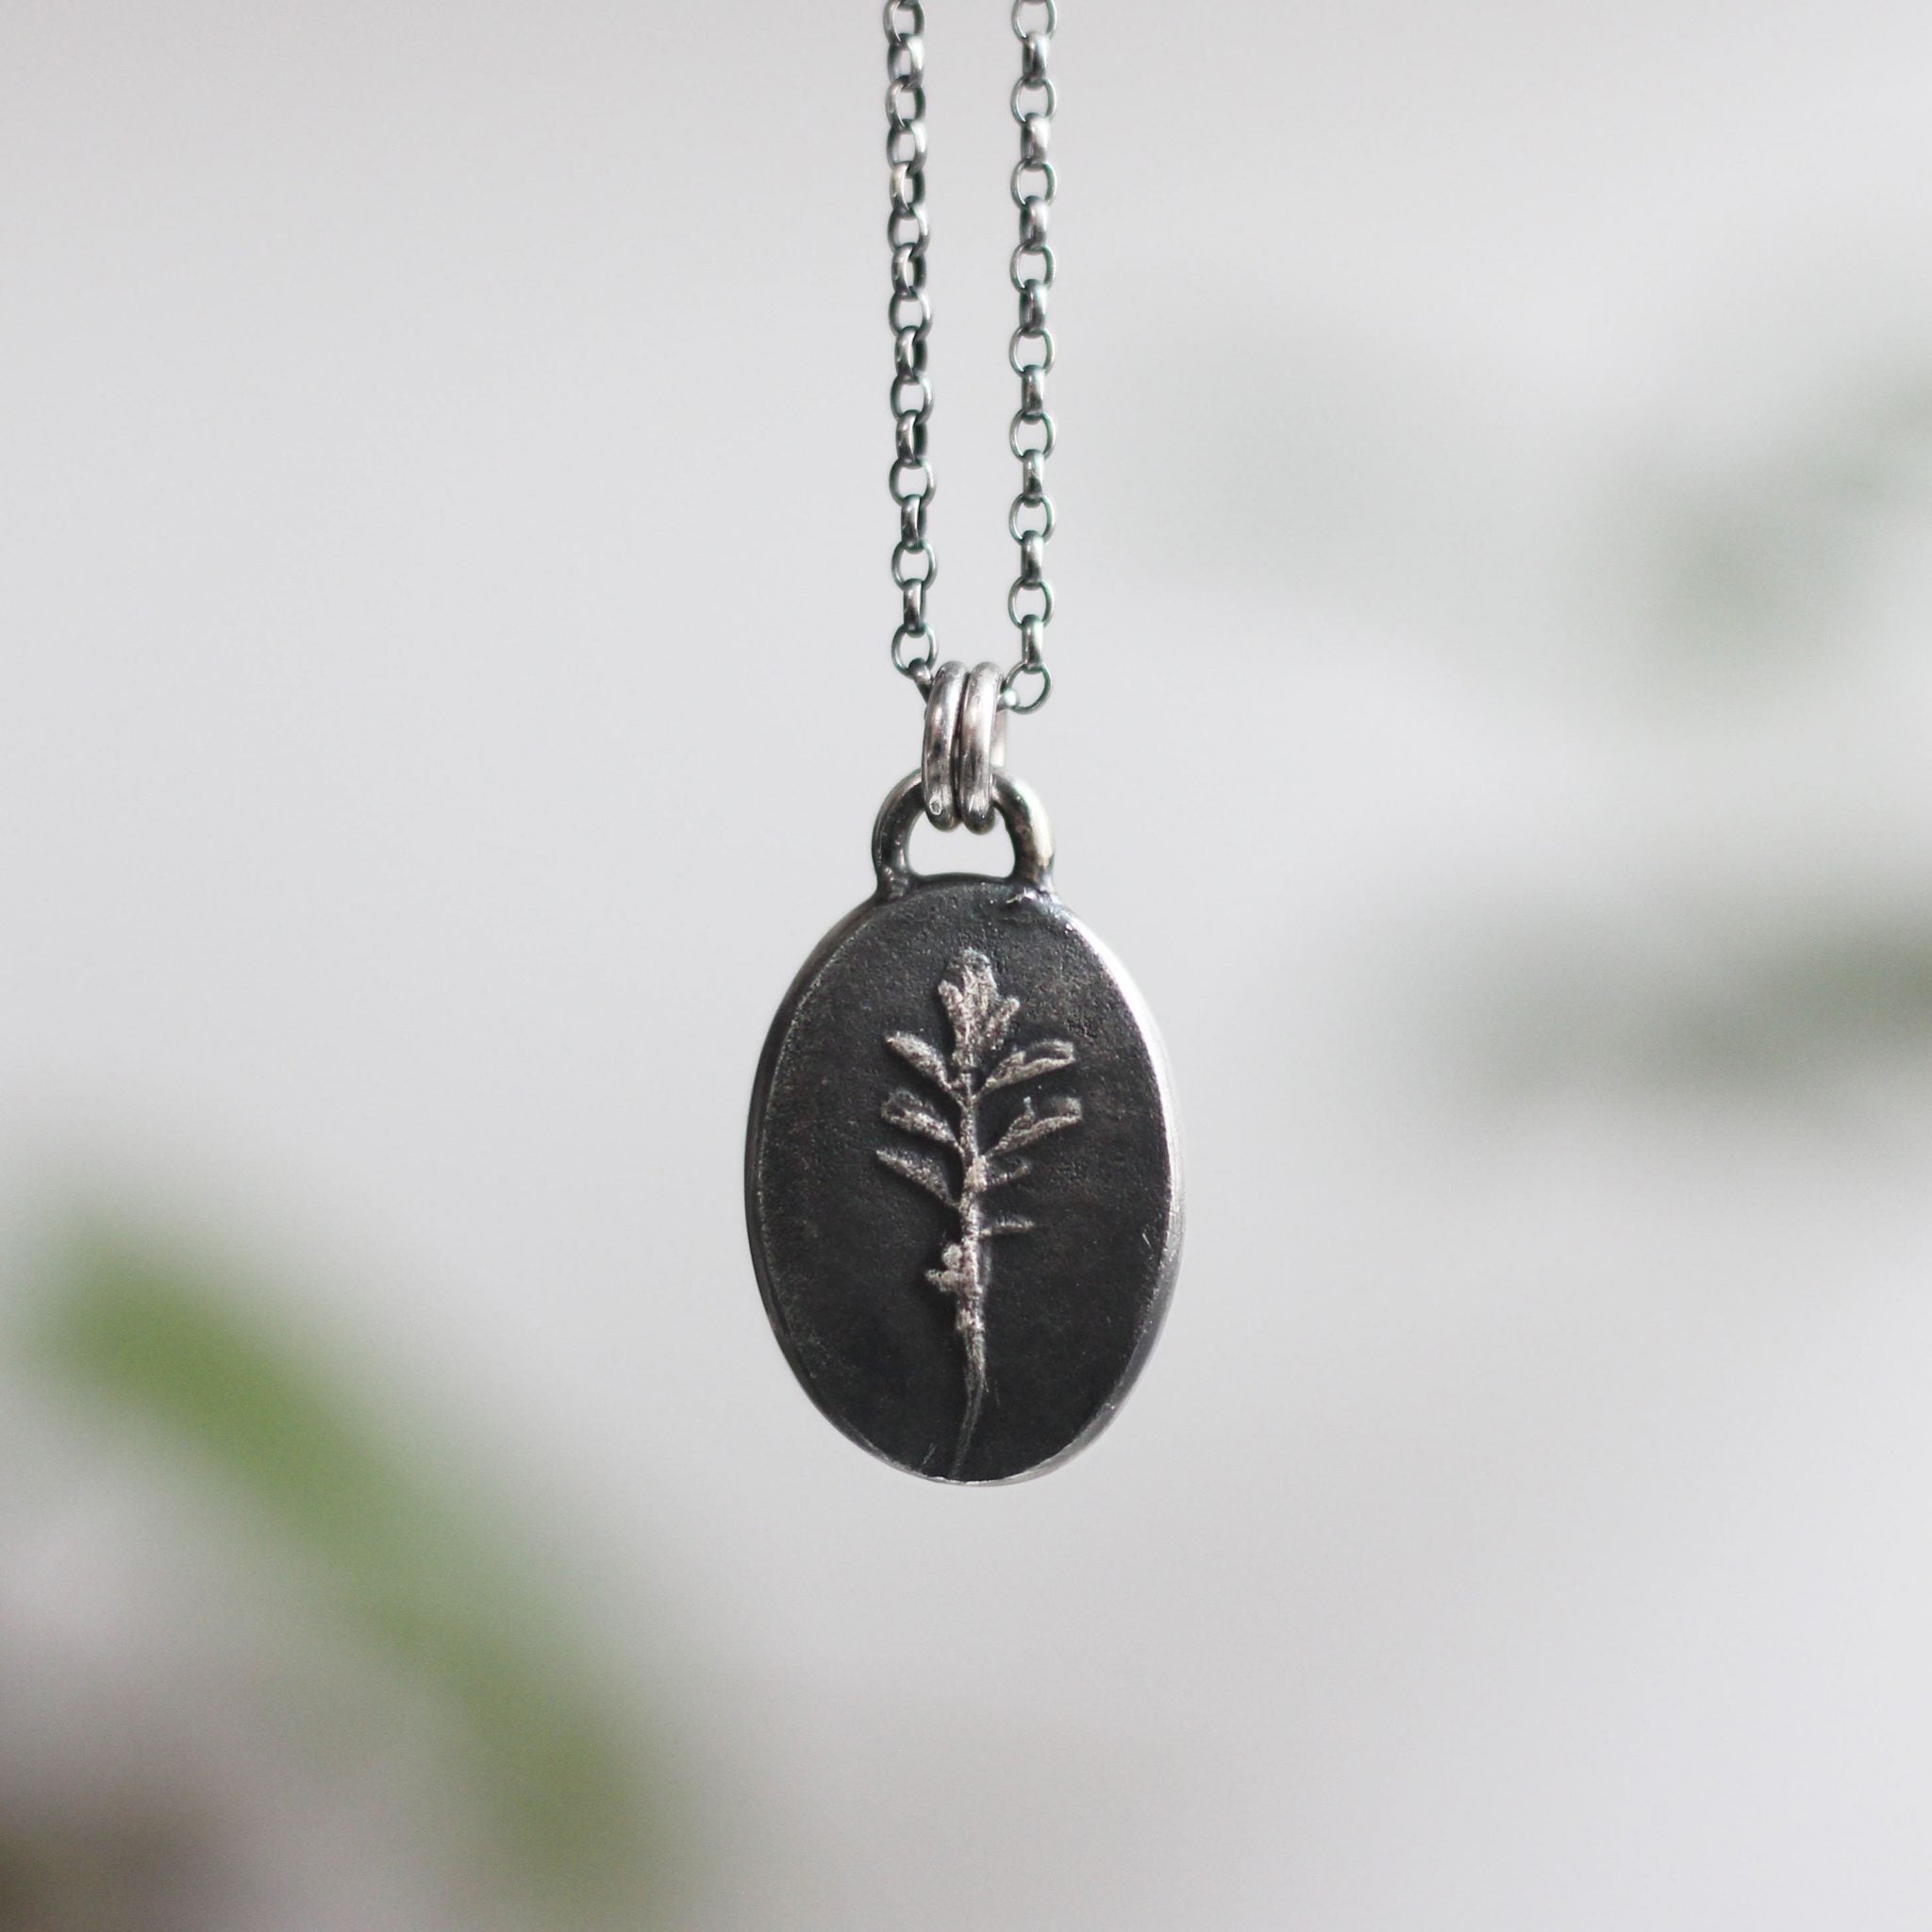 Fossil Leaf Necklace, necklace for spring, spring necklace